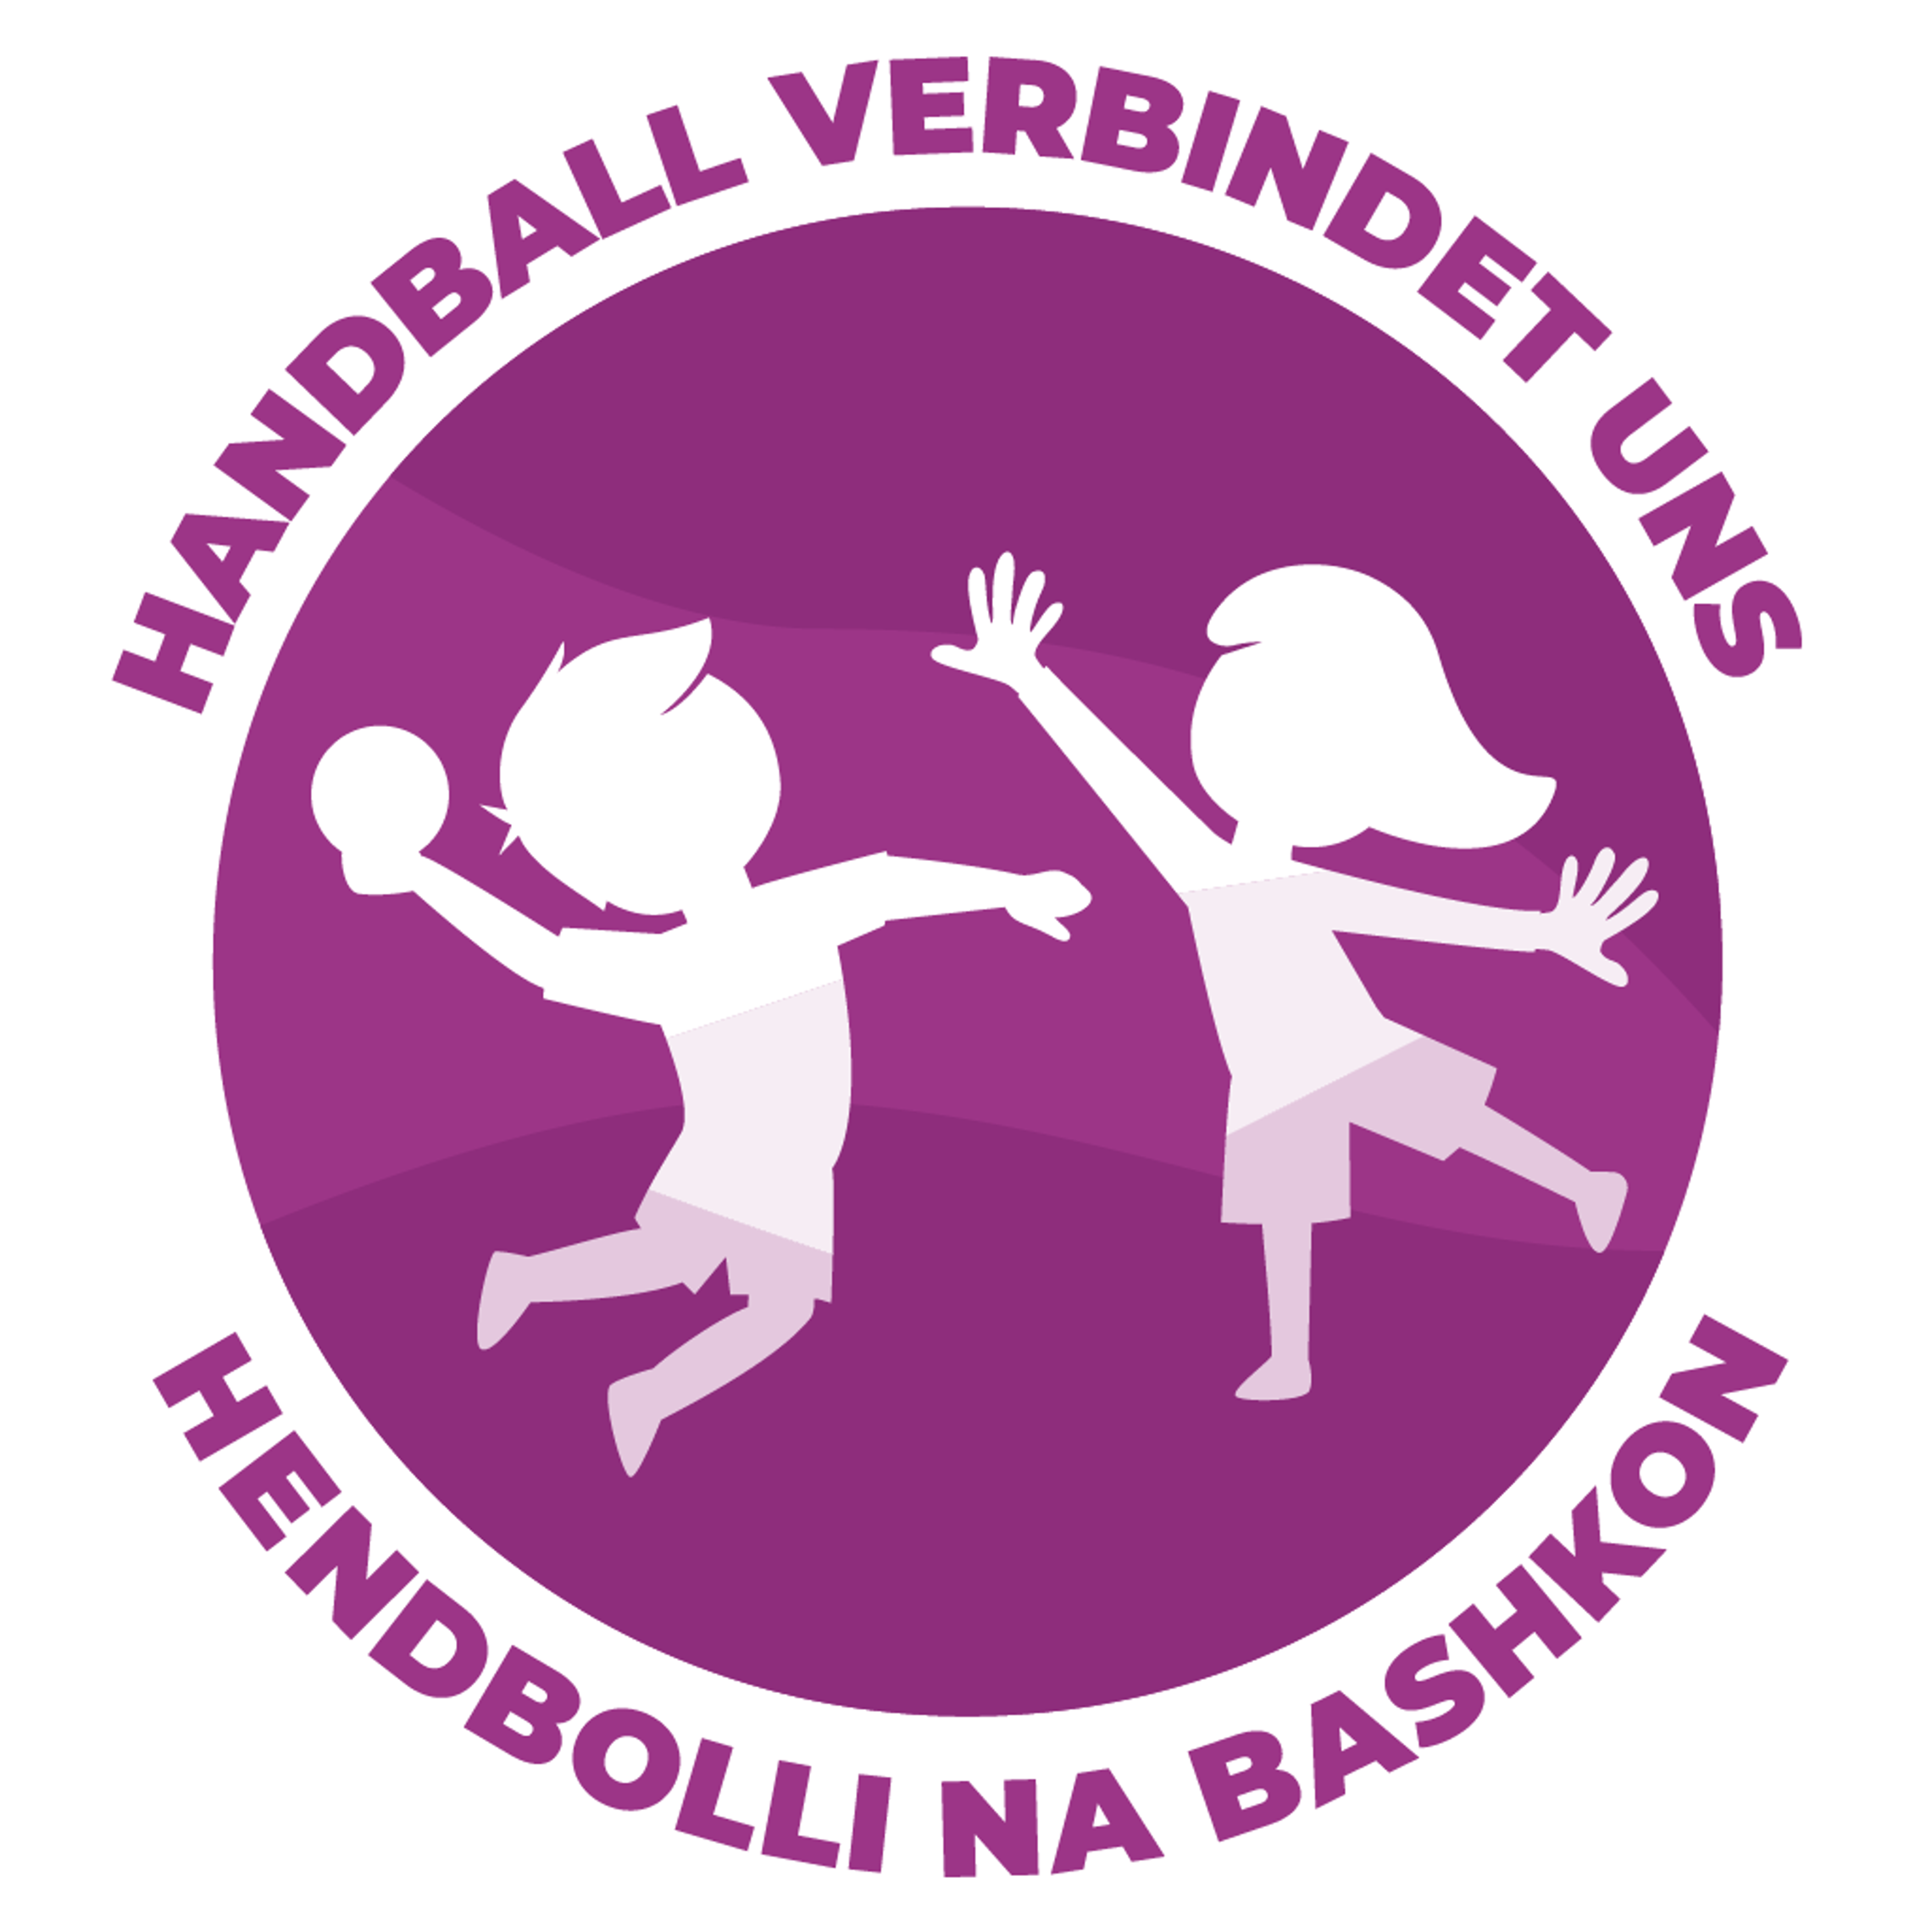 Handball Verbindet Uns Logo (1) (3)